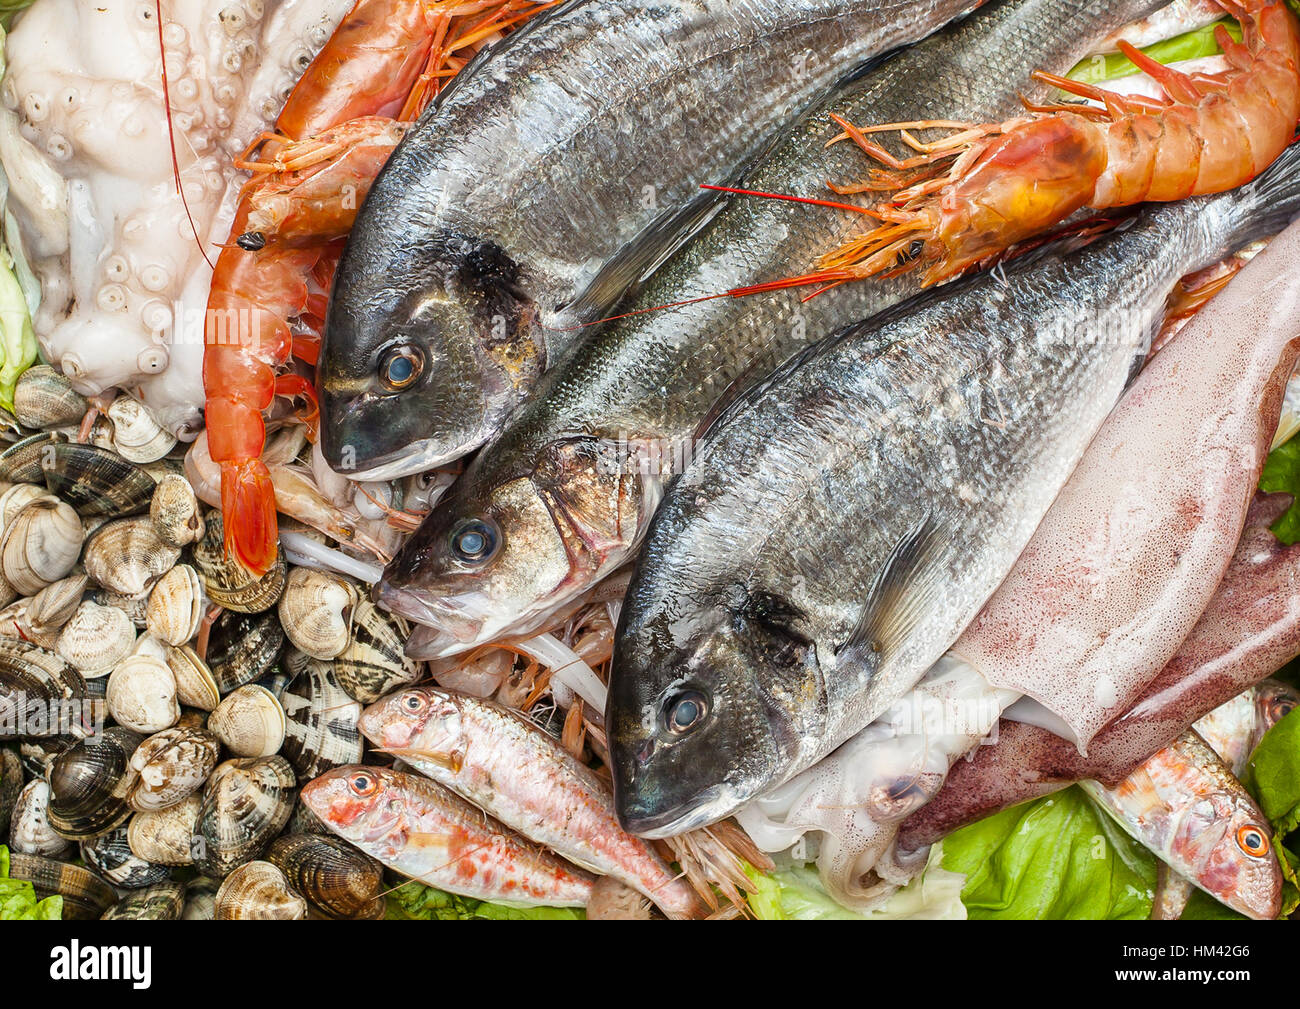 Los diferentes tipos de pescado fresco, mariscos y almejas de fondo. Foto de stock